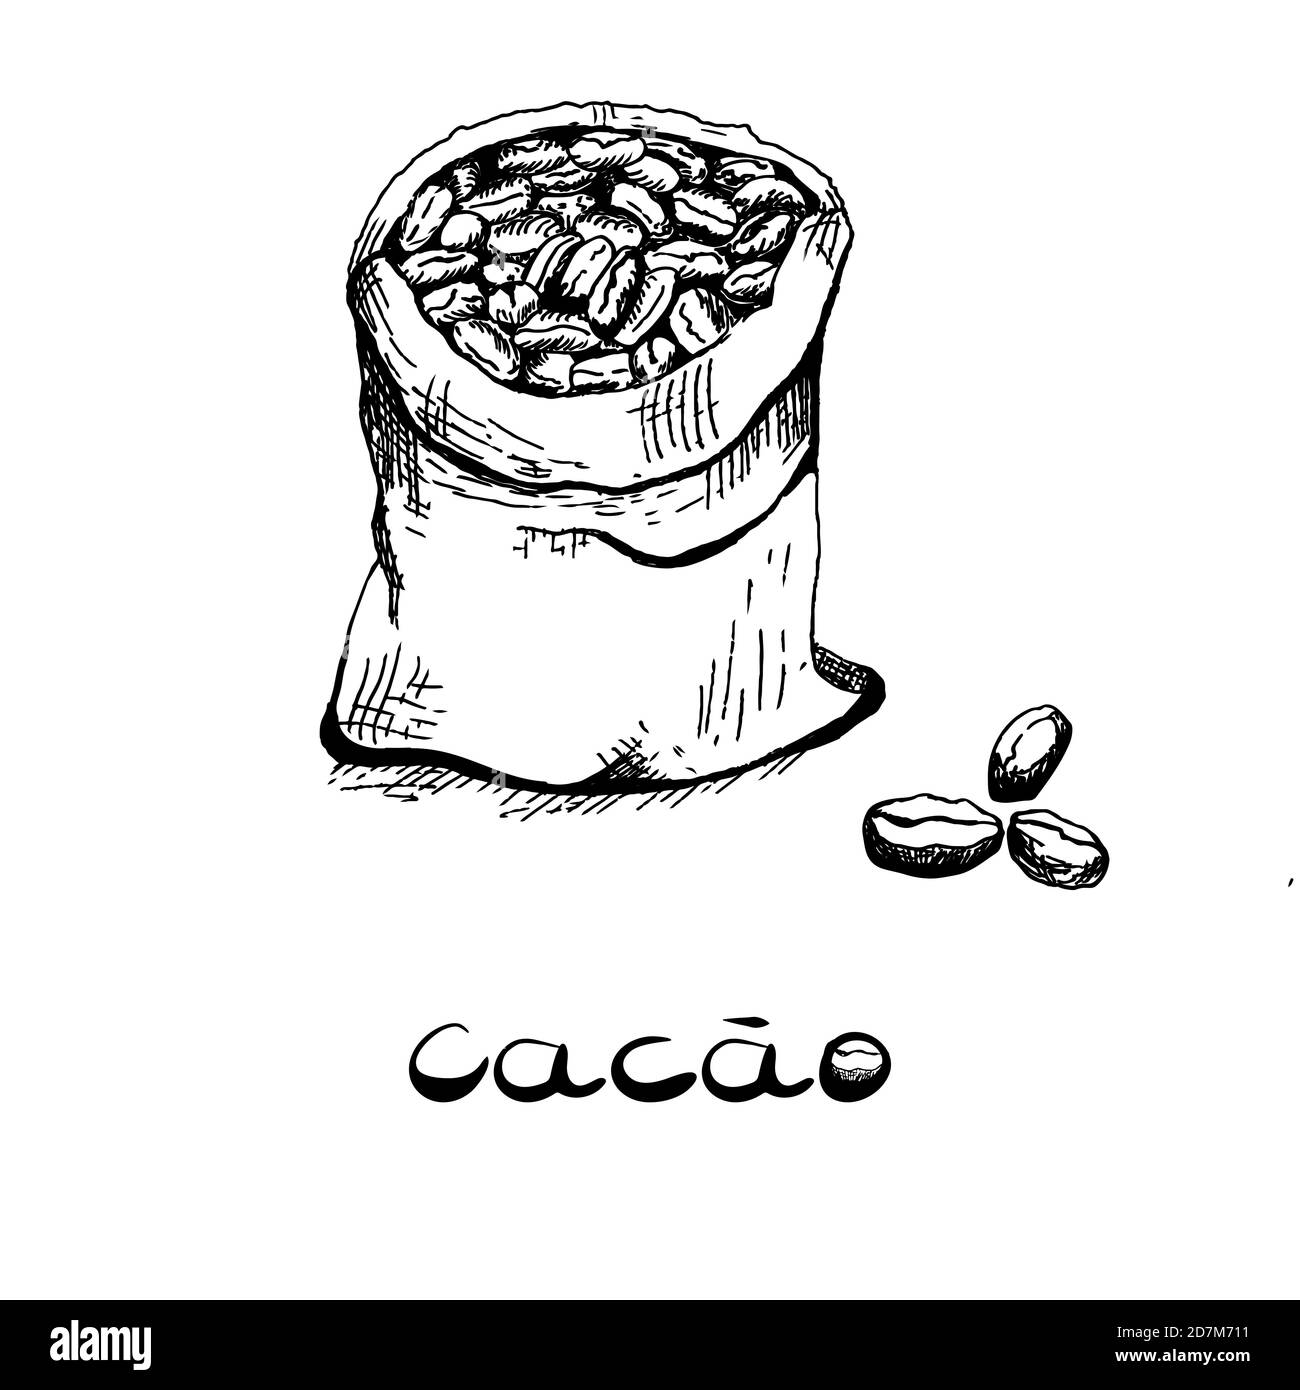 Le sac avec le haricot de l'arbre de cacao. Image en noir et blanc dans le style des graphiques dessinés à la main. Illustration vectorielle, esquisse Illustration de Vecteur